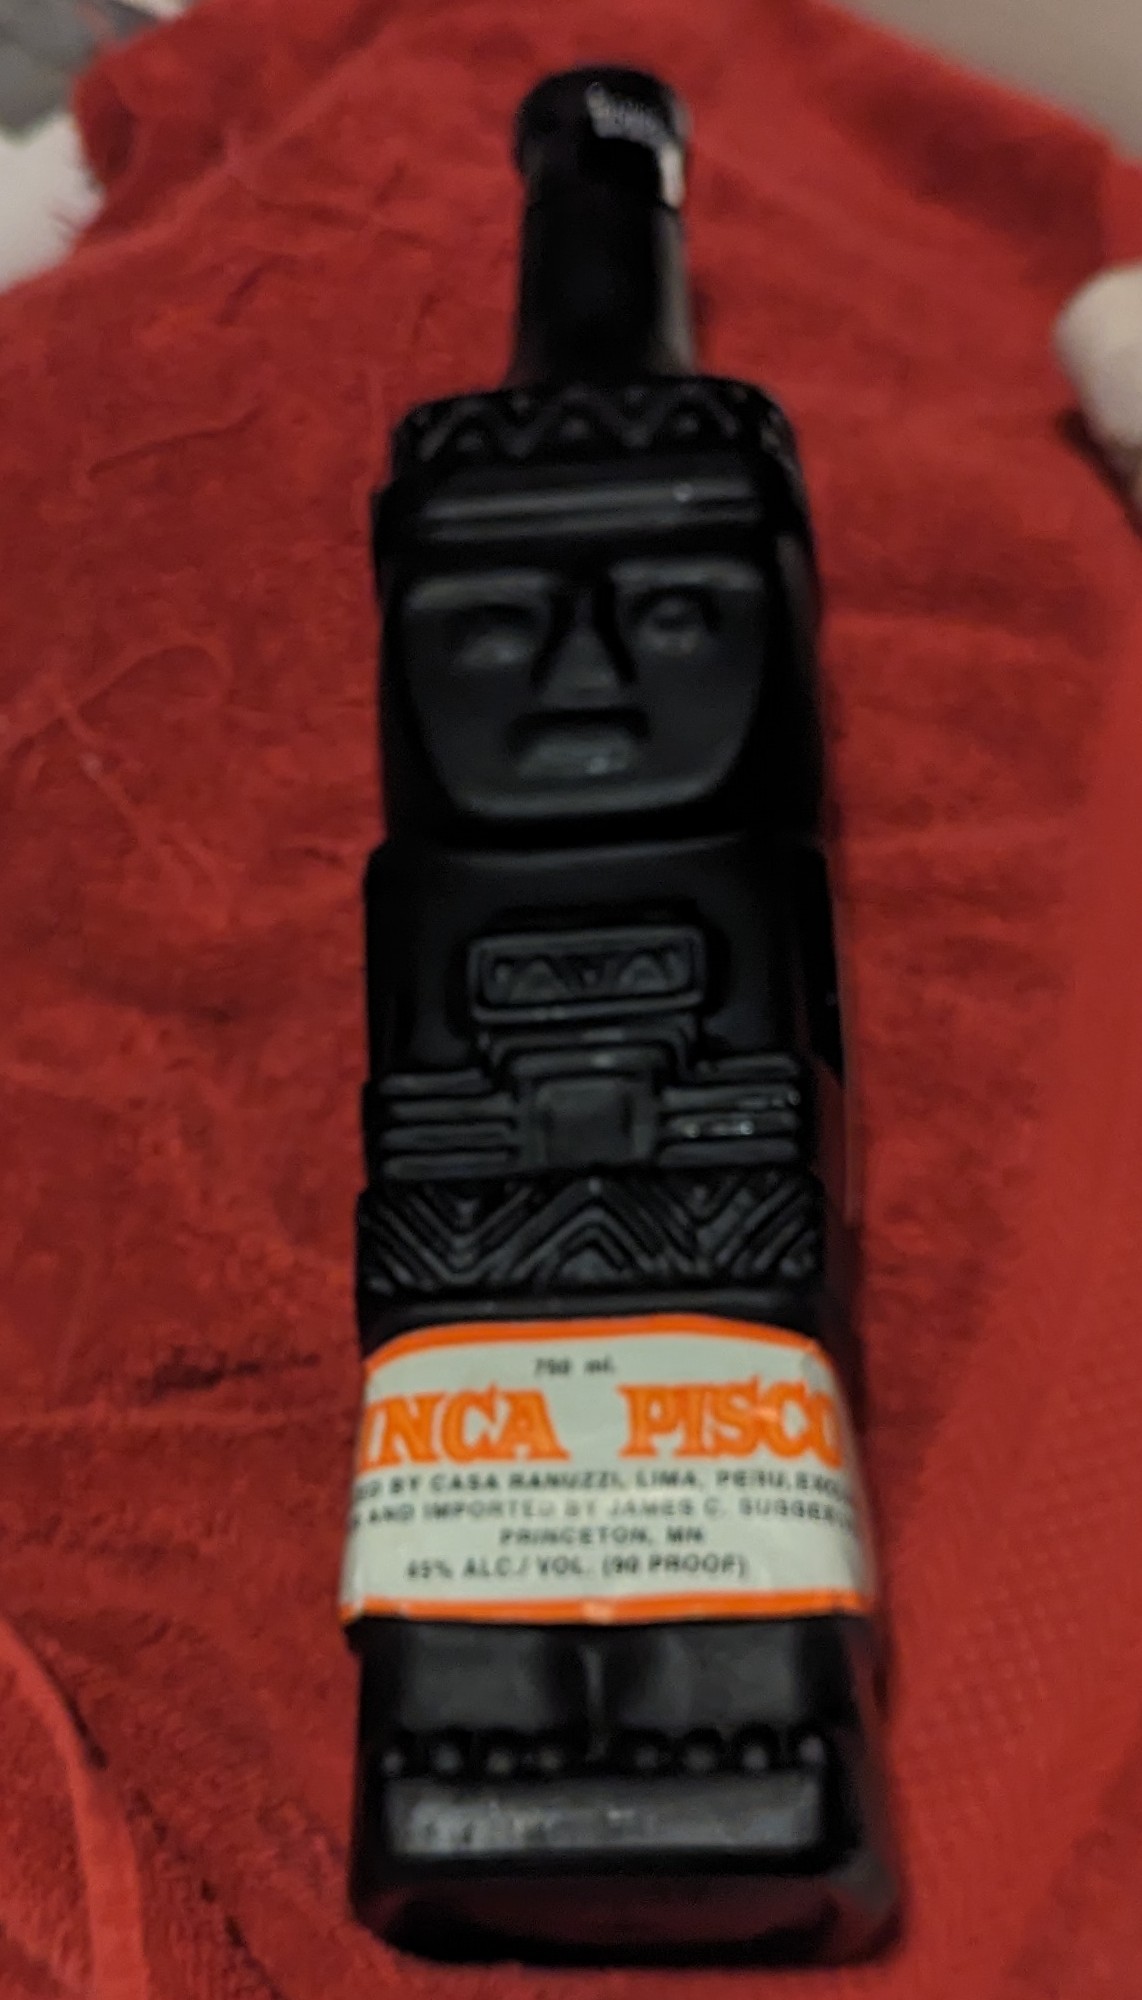 Inca Pisco bottle